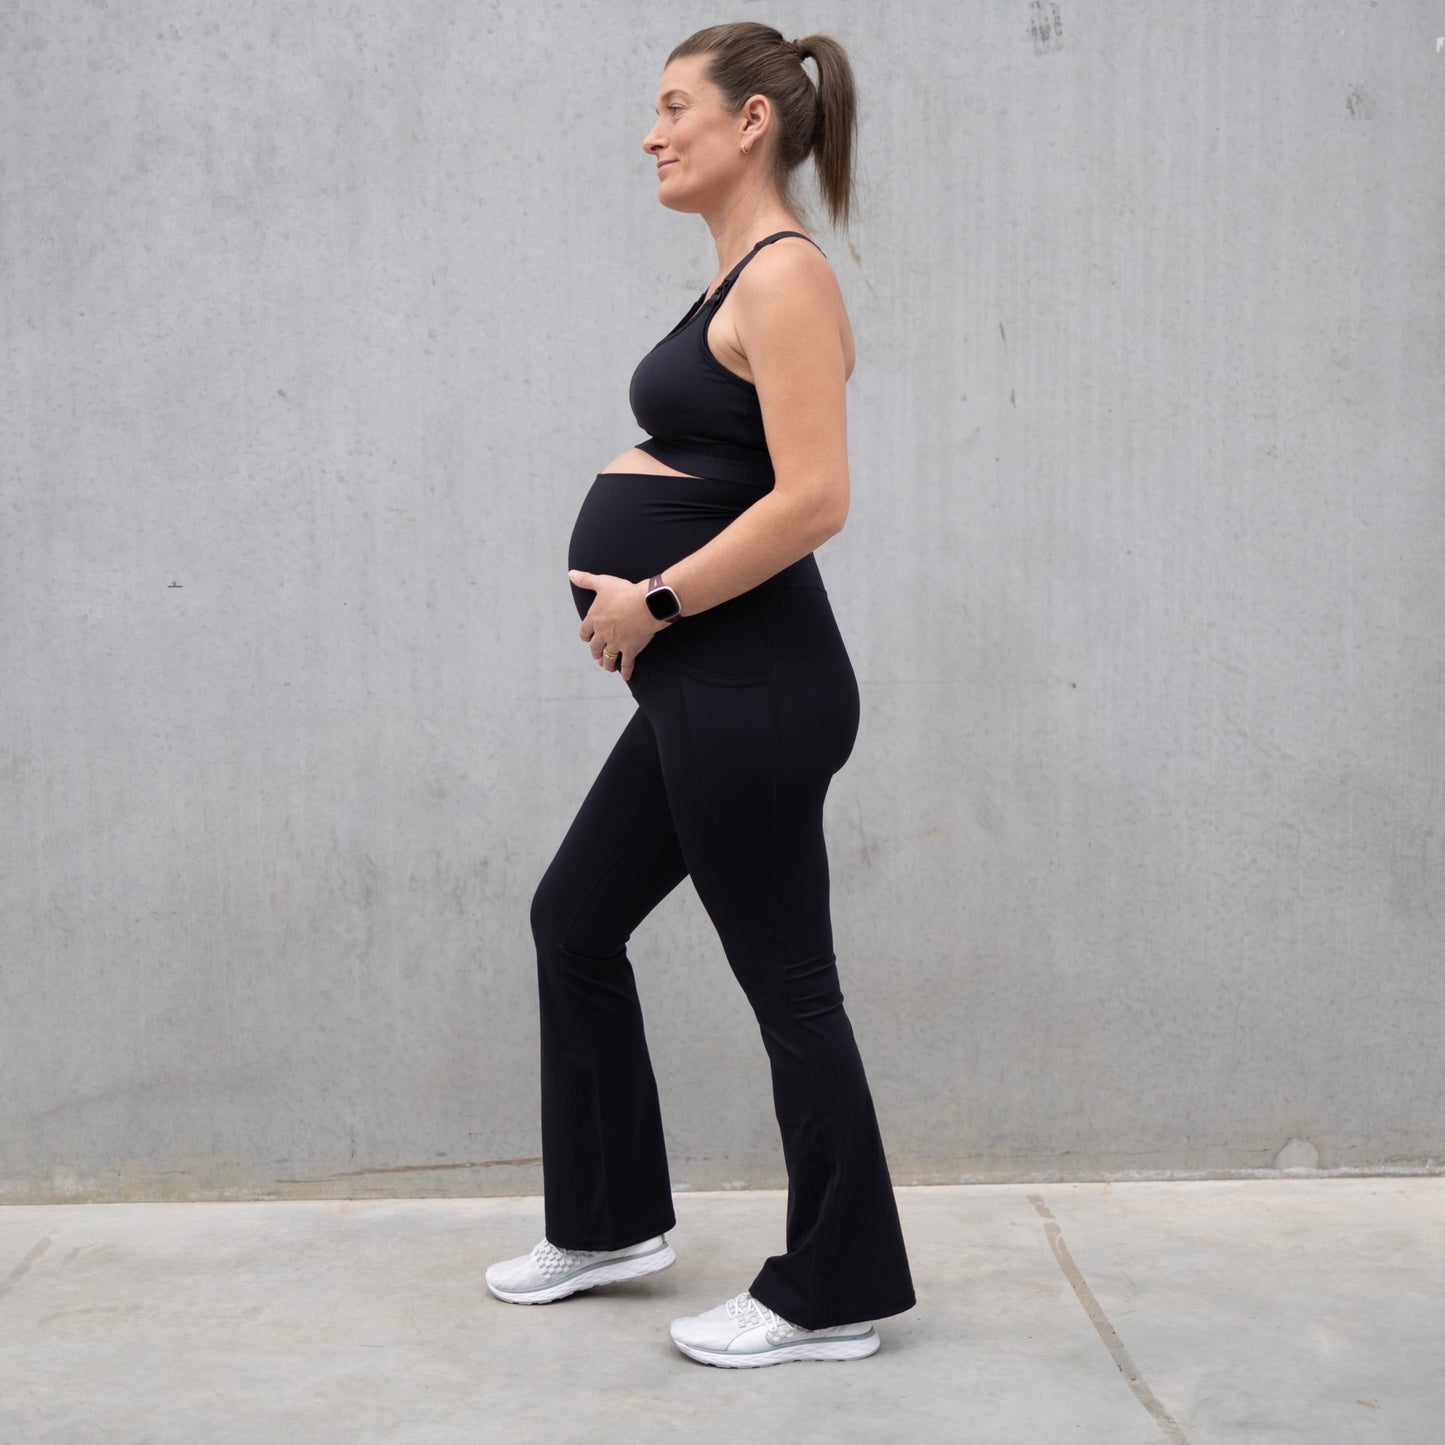 Emama Maternity Leggings Full Length + Pockets - Black flares